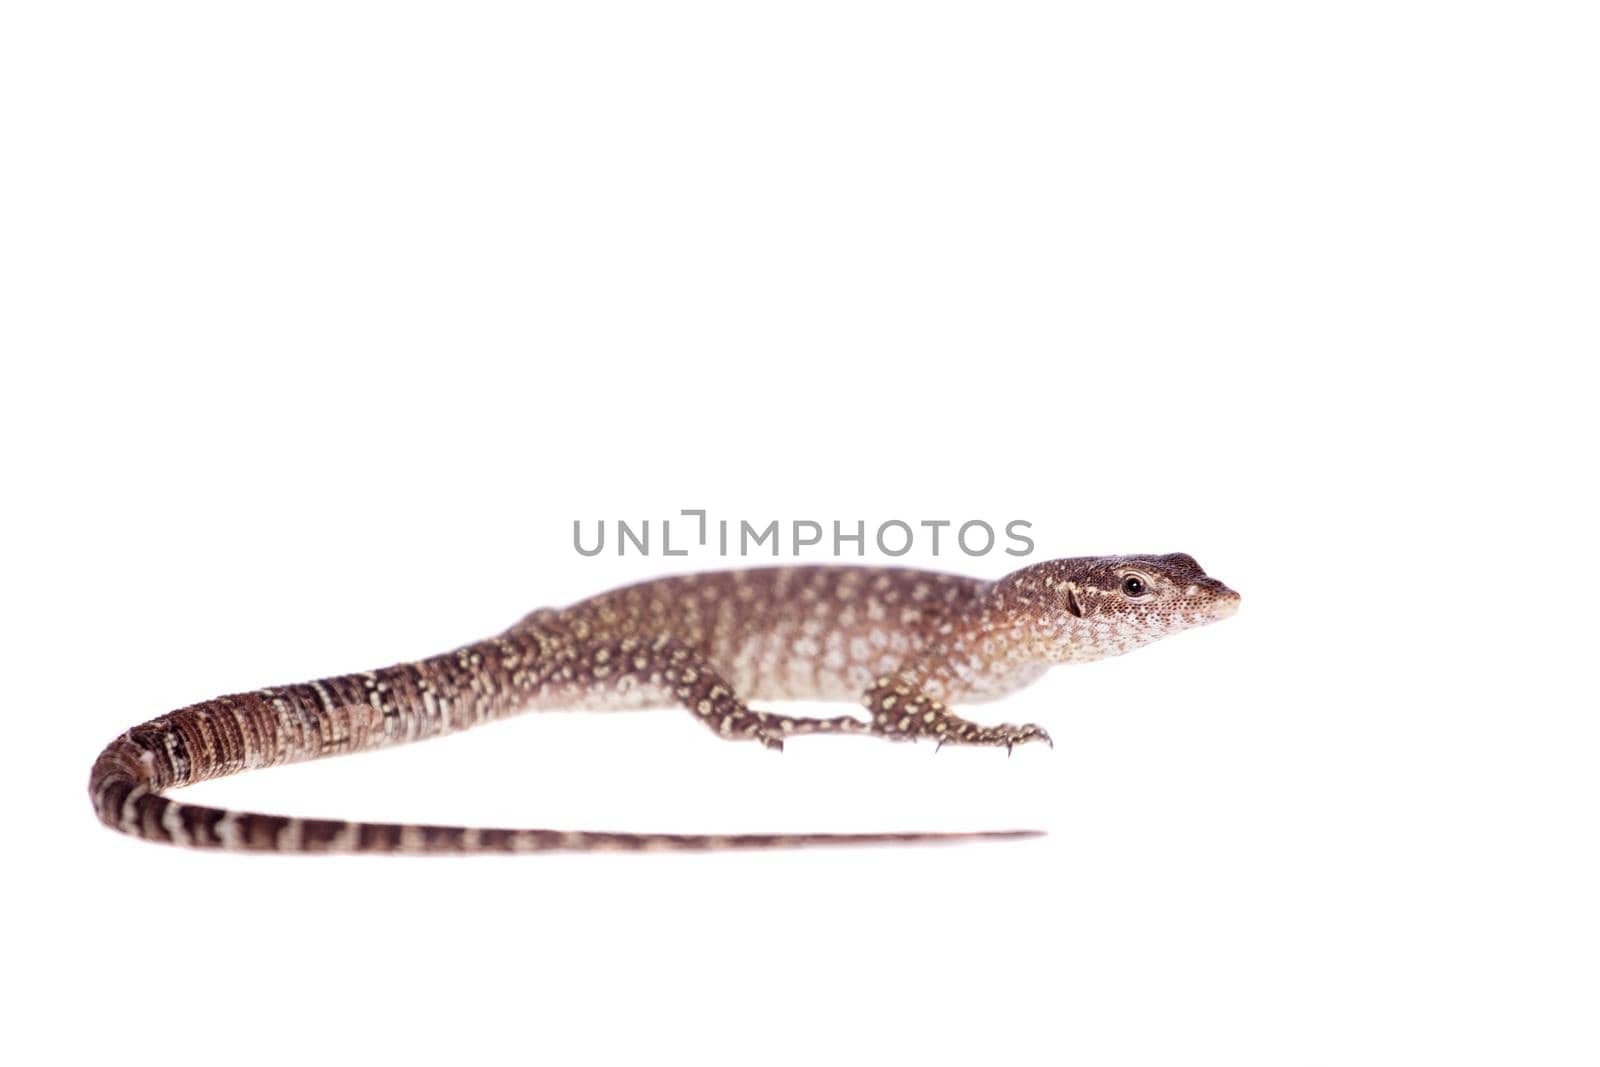 Asian Water Monitor Lizard, Varanus salvator, isolated on white background.